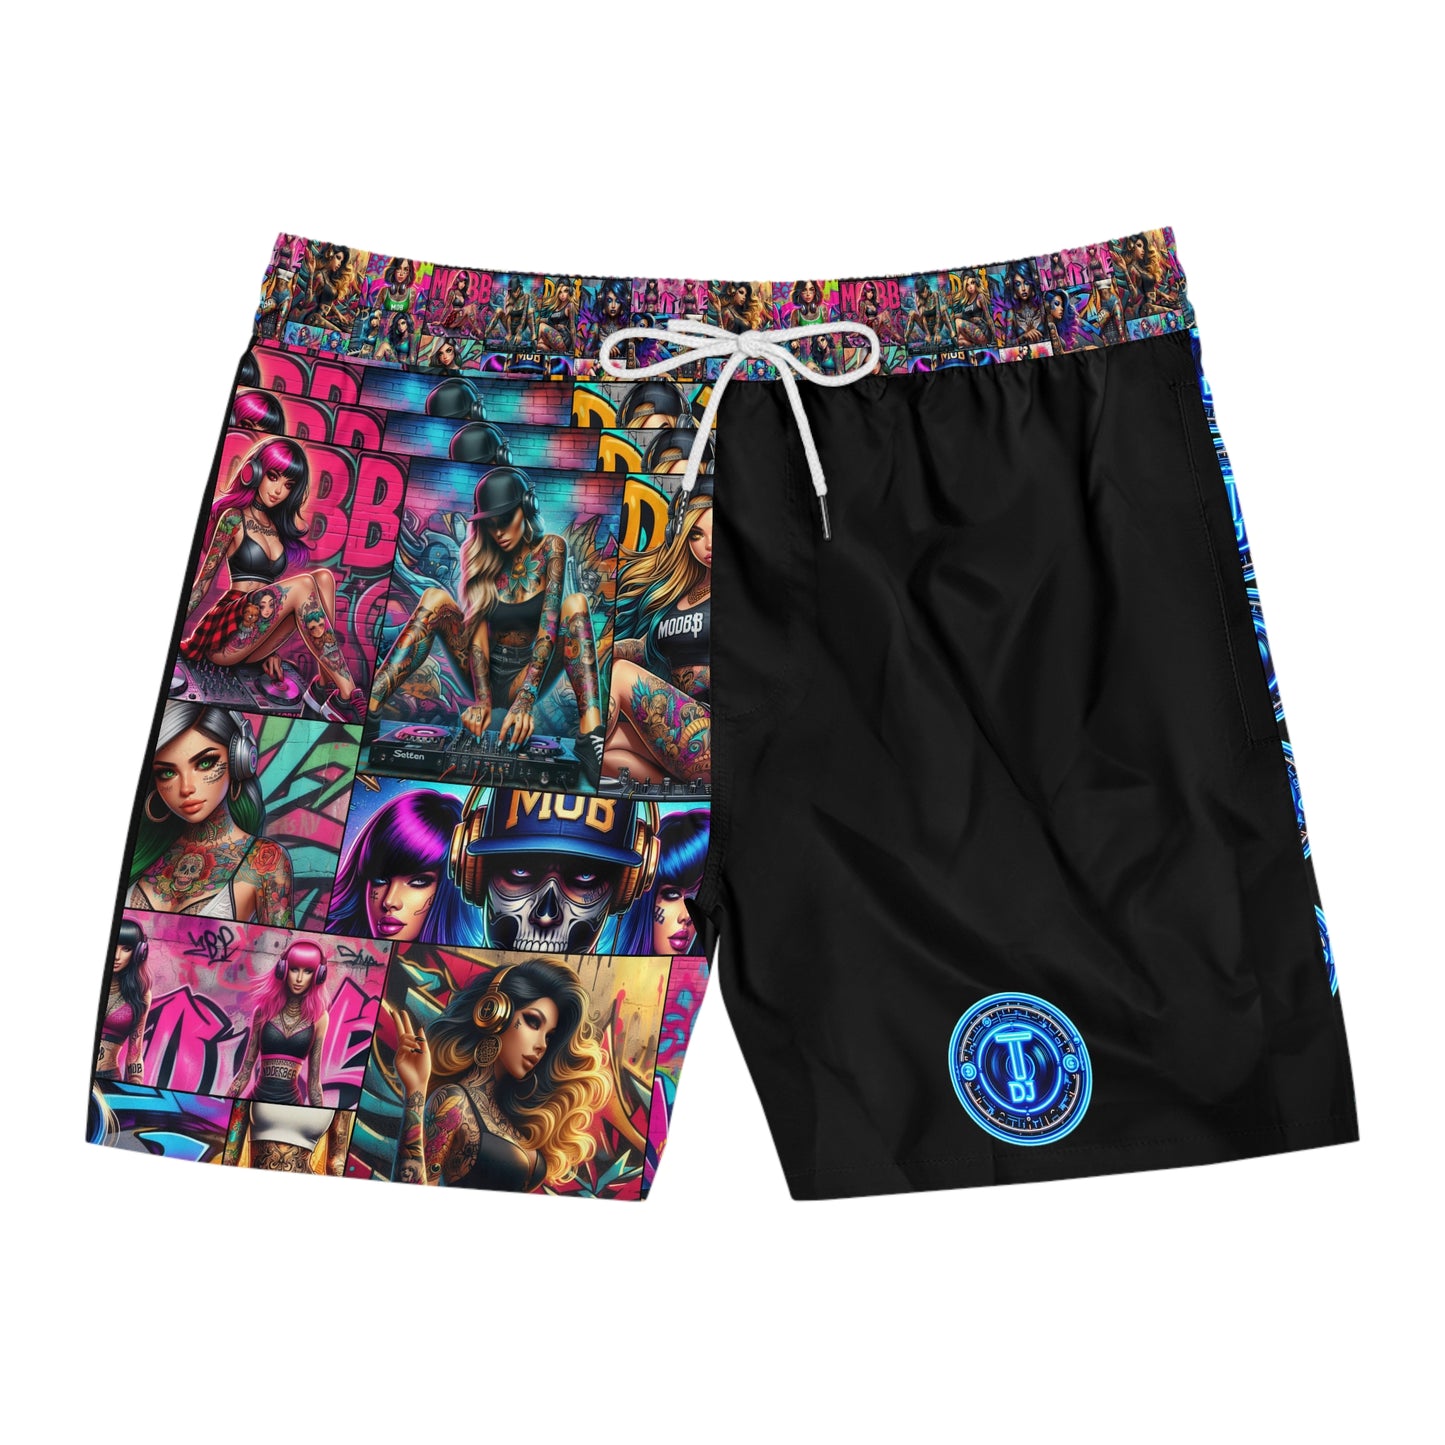 MDBTDJ#MLS1 Men's Mid-Length Swim Shorts Tattooed Dj's Limited Edition Swim Wear, All Over Prints, Tattooed Djs Shop